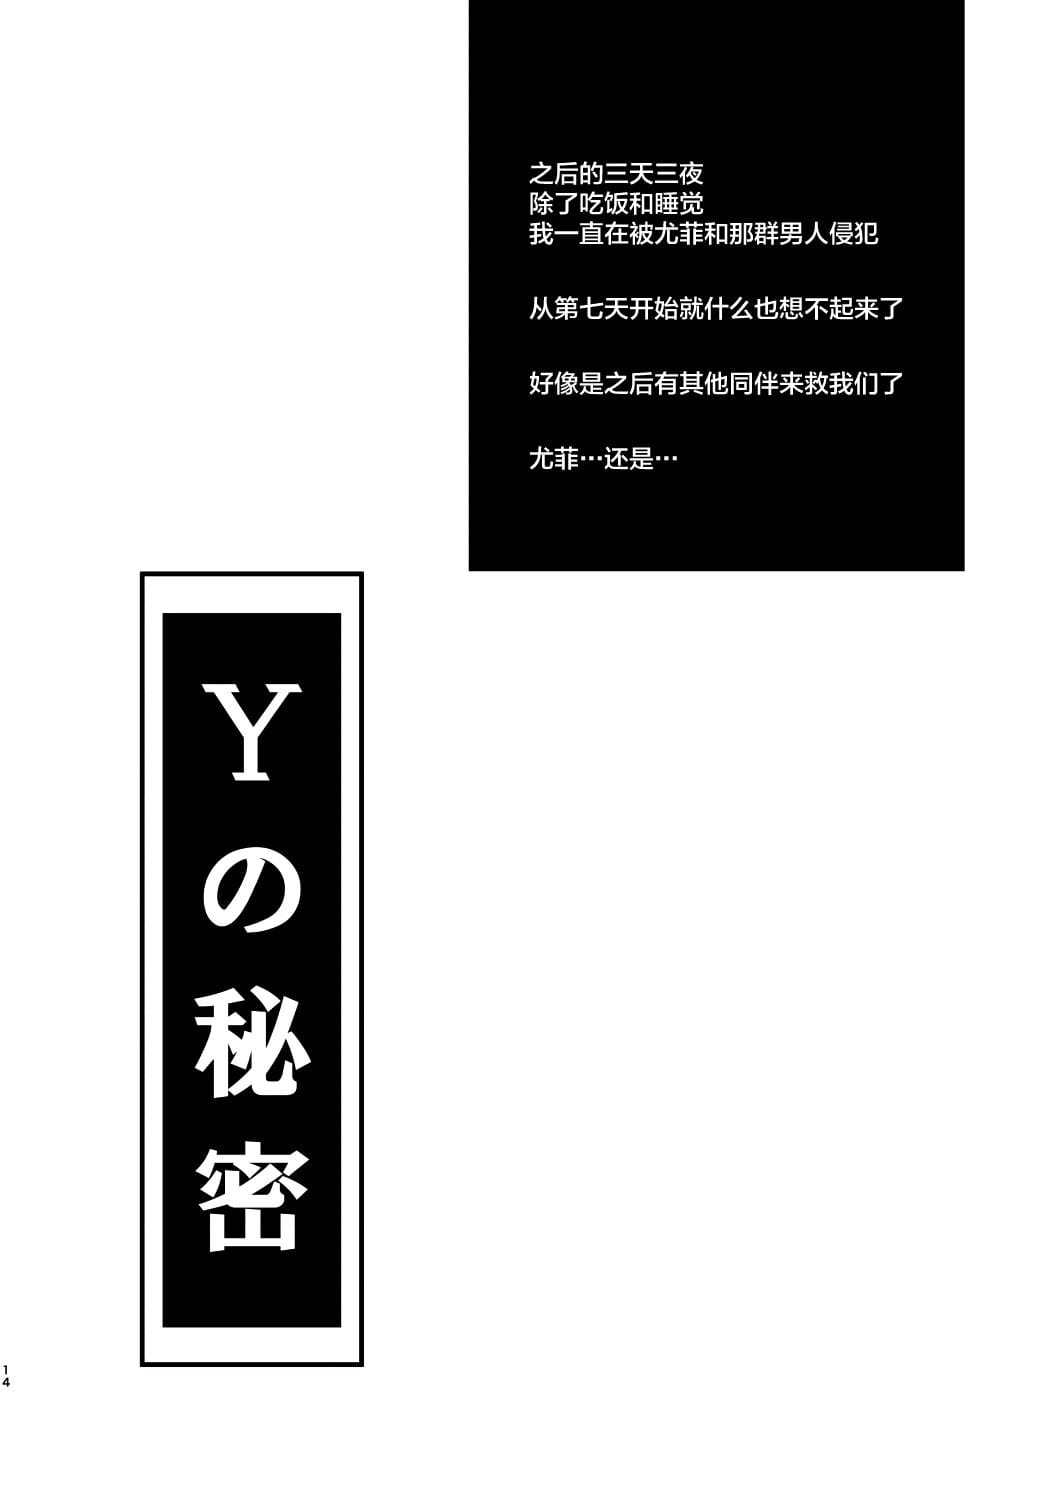 t&y 综合 page 1